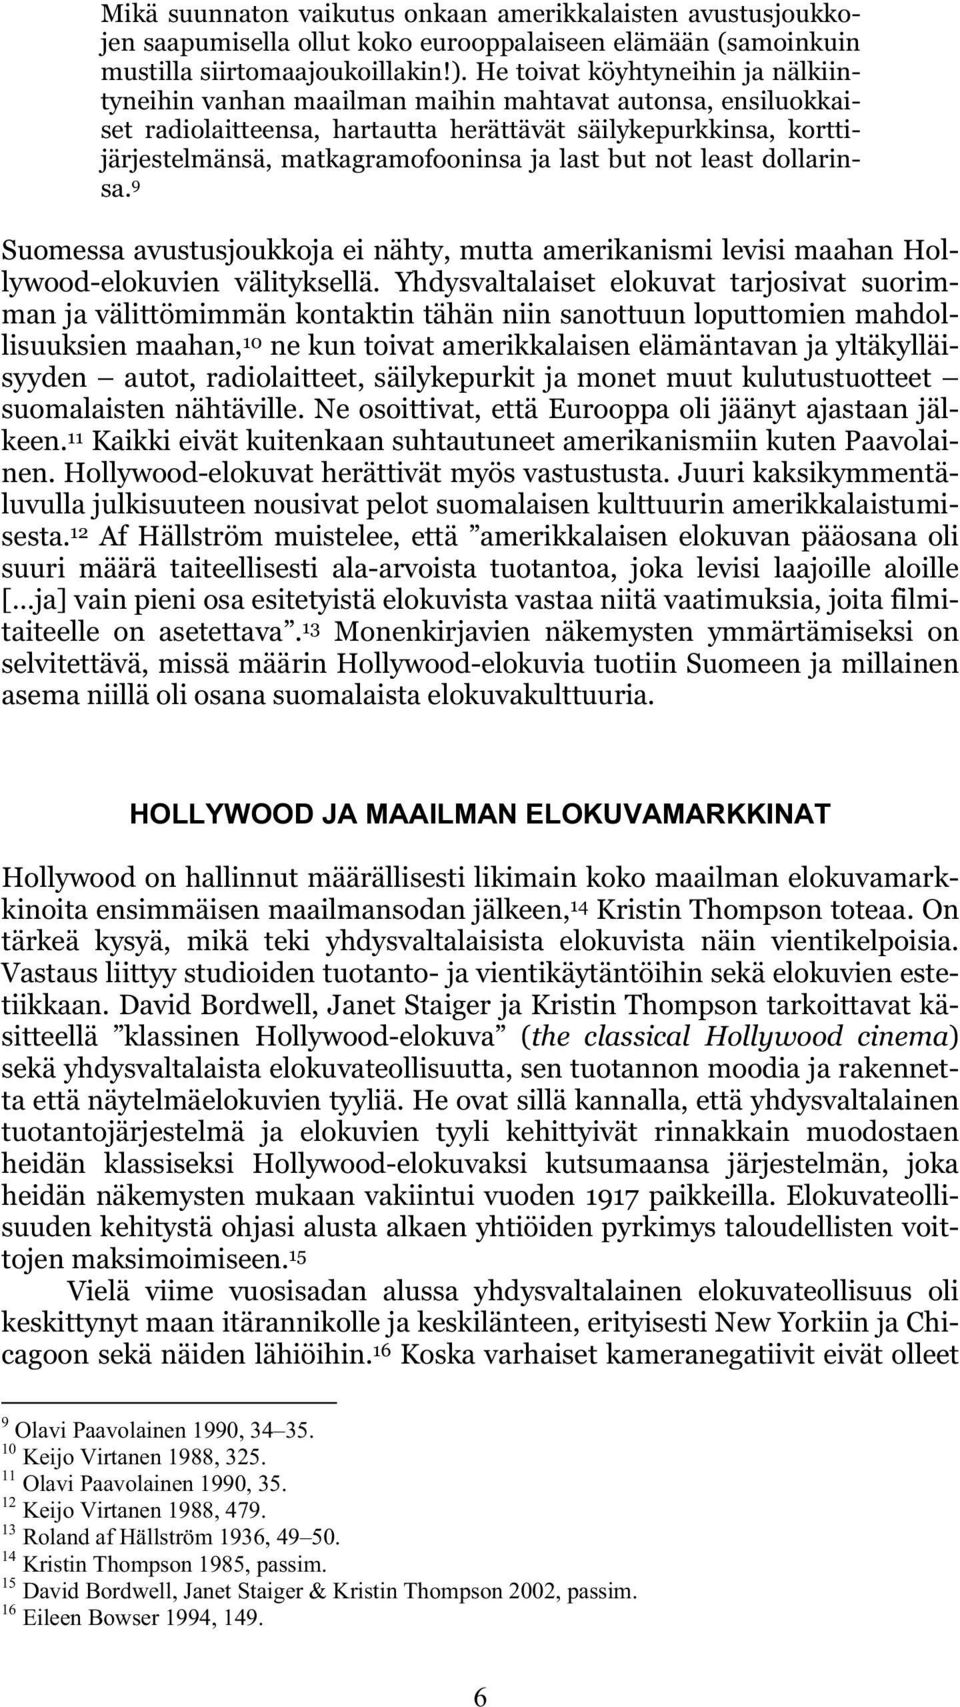 last but not least dollarinsa. 9 Suomessa avustusjoukkoja ei nähty, mutta amerikanismi levisi maahan Hollywood-elokuvien välityksellä.